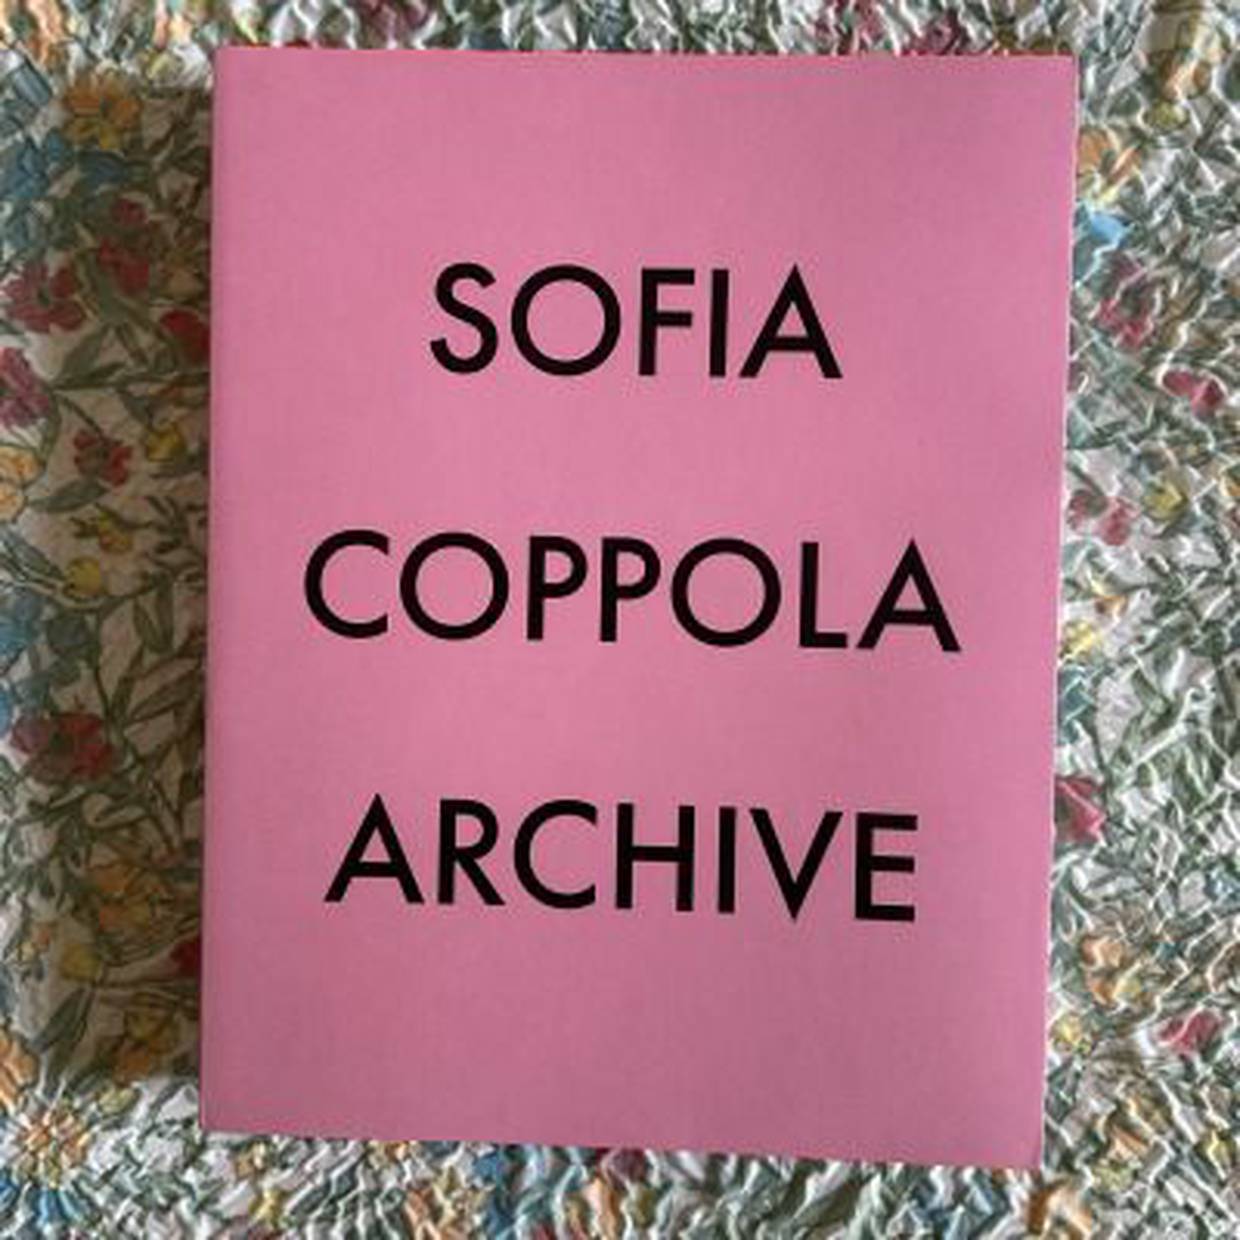 Sofia Coppola Archive Book